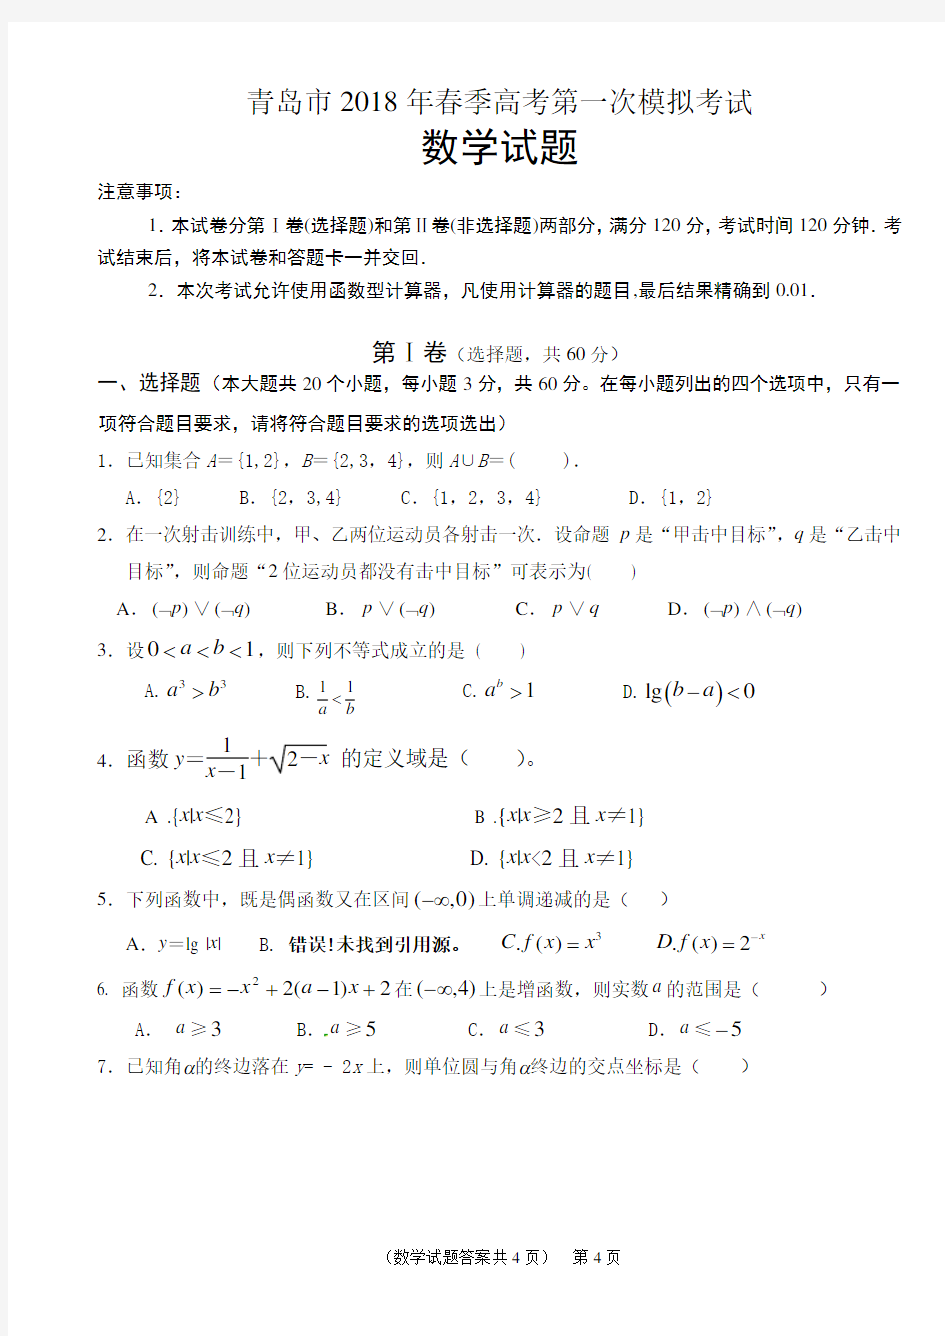 (完整版)青岛市2018年春季高考第一次模拟考试《数学》试卷及答案